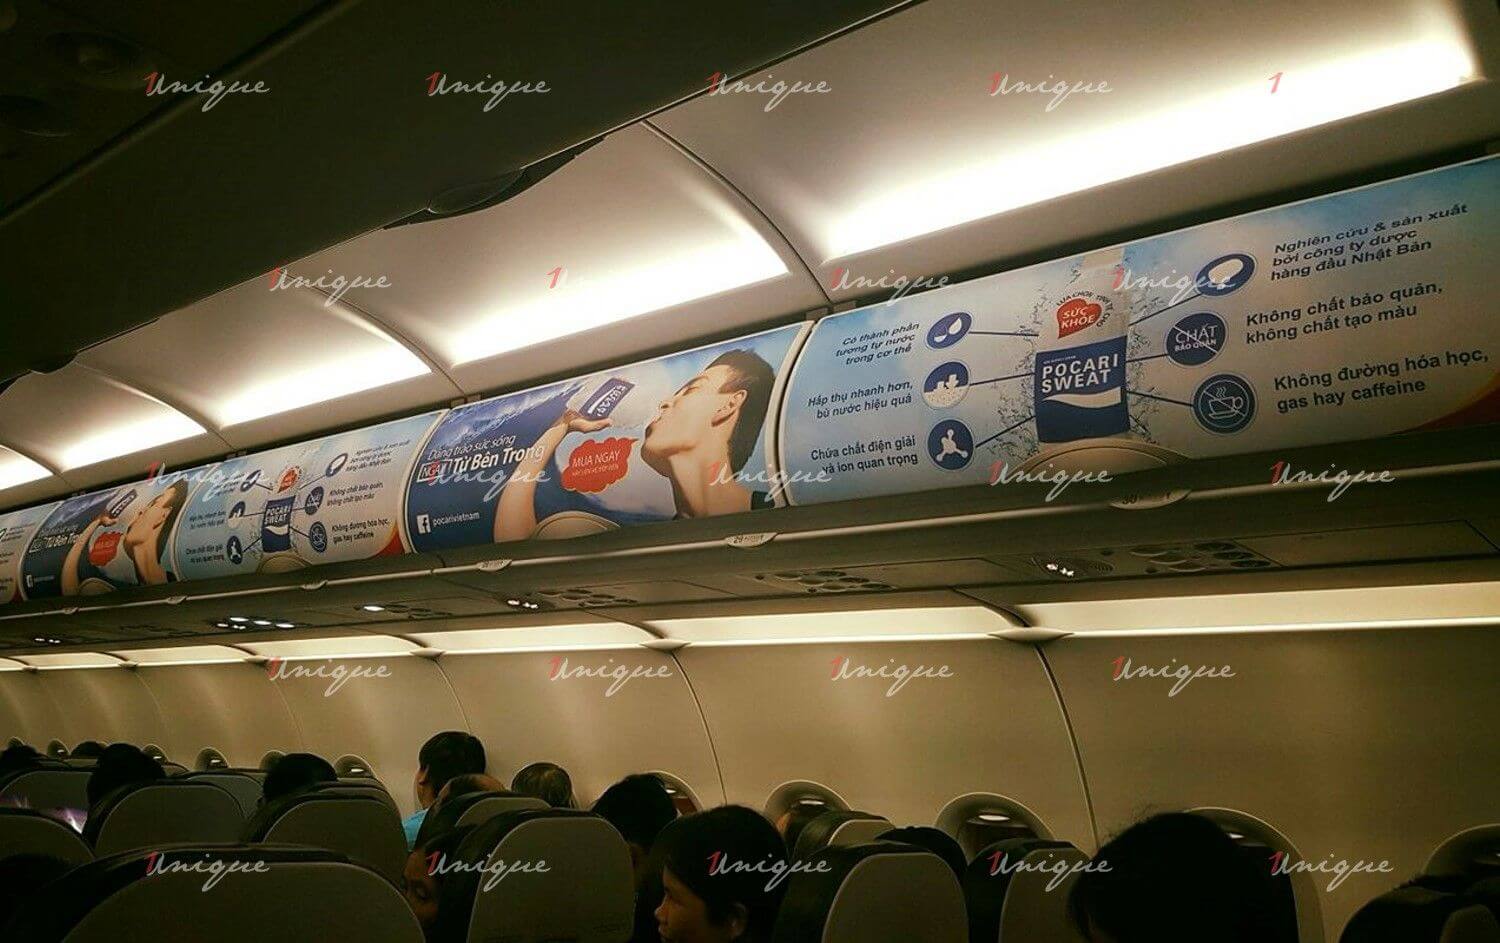 Báo giá quảng cáo trên máy bay Vietnam Airlines mới nhất